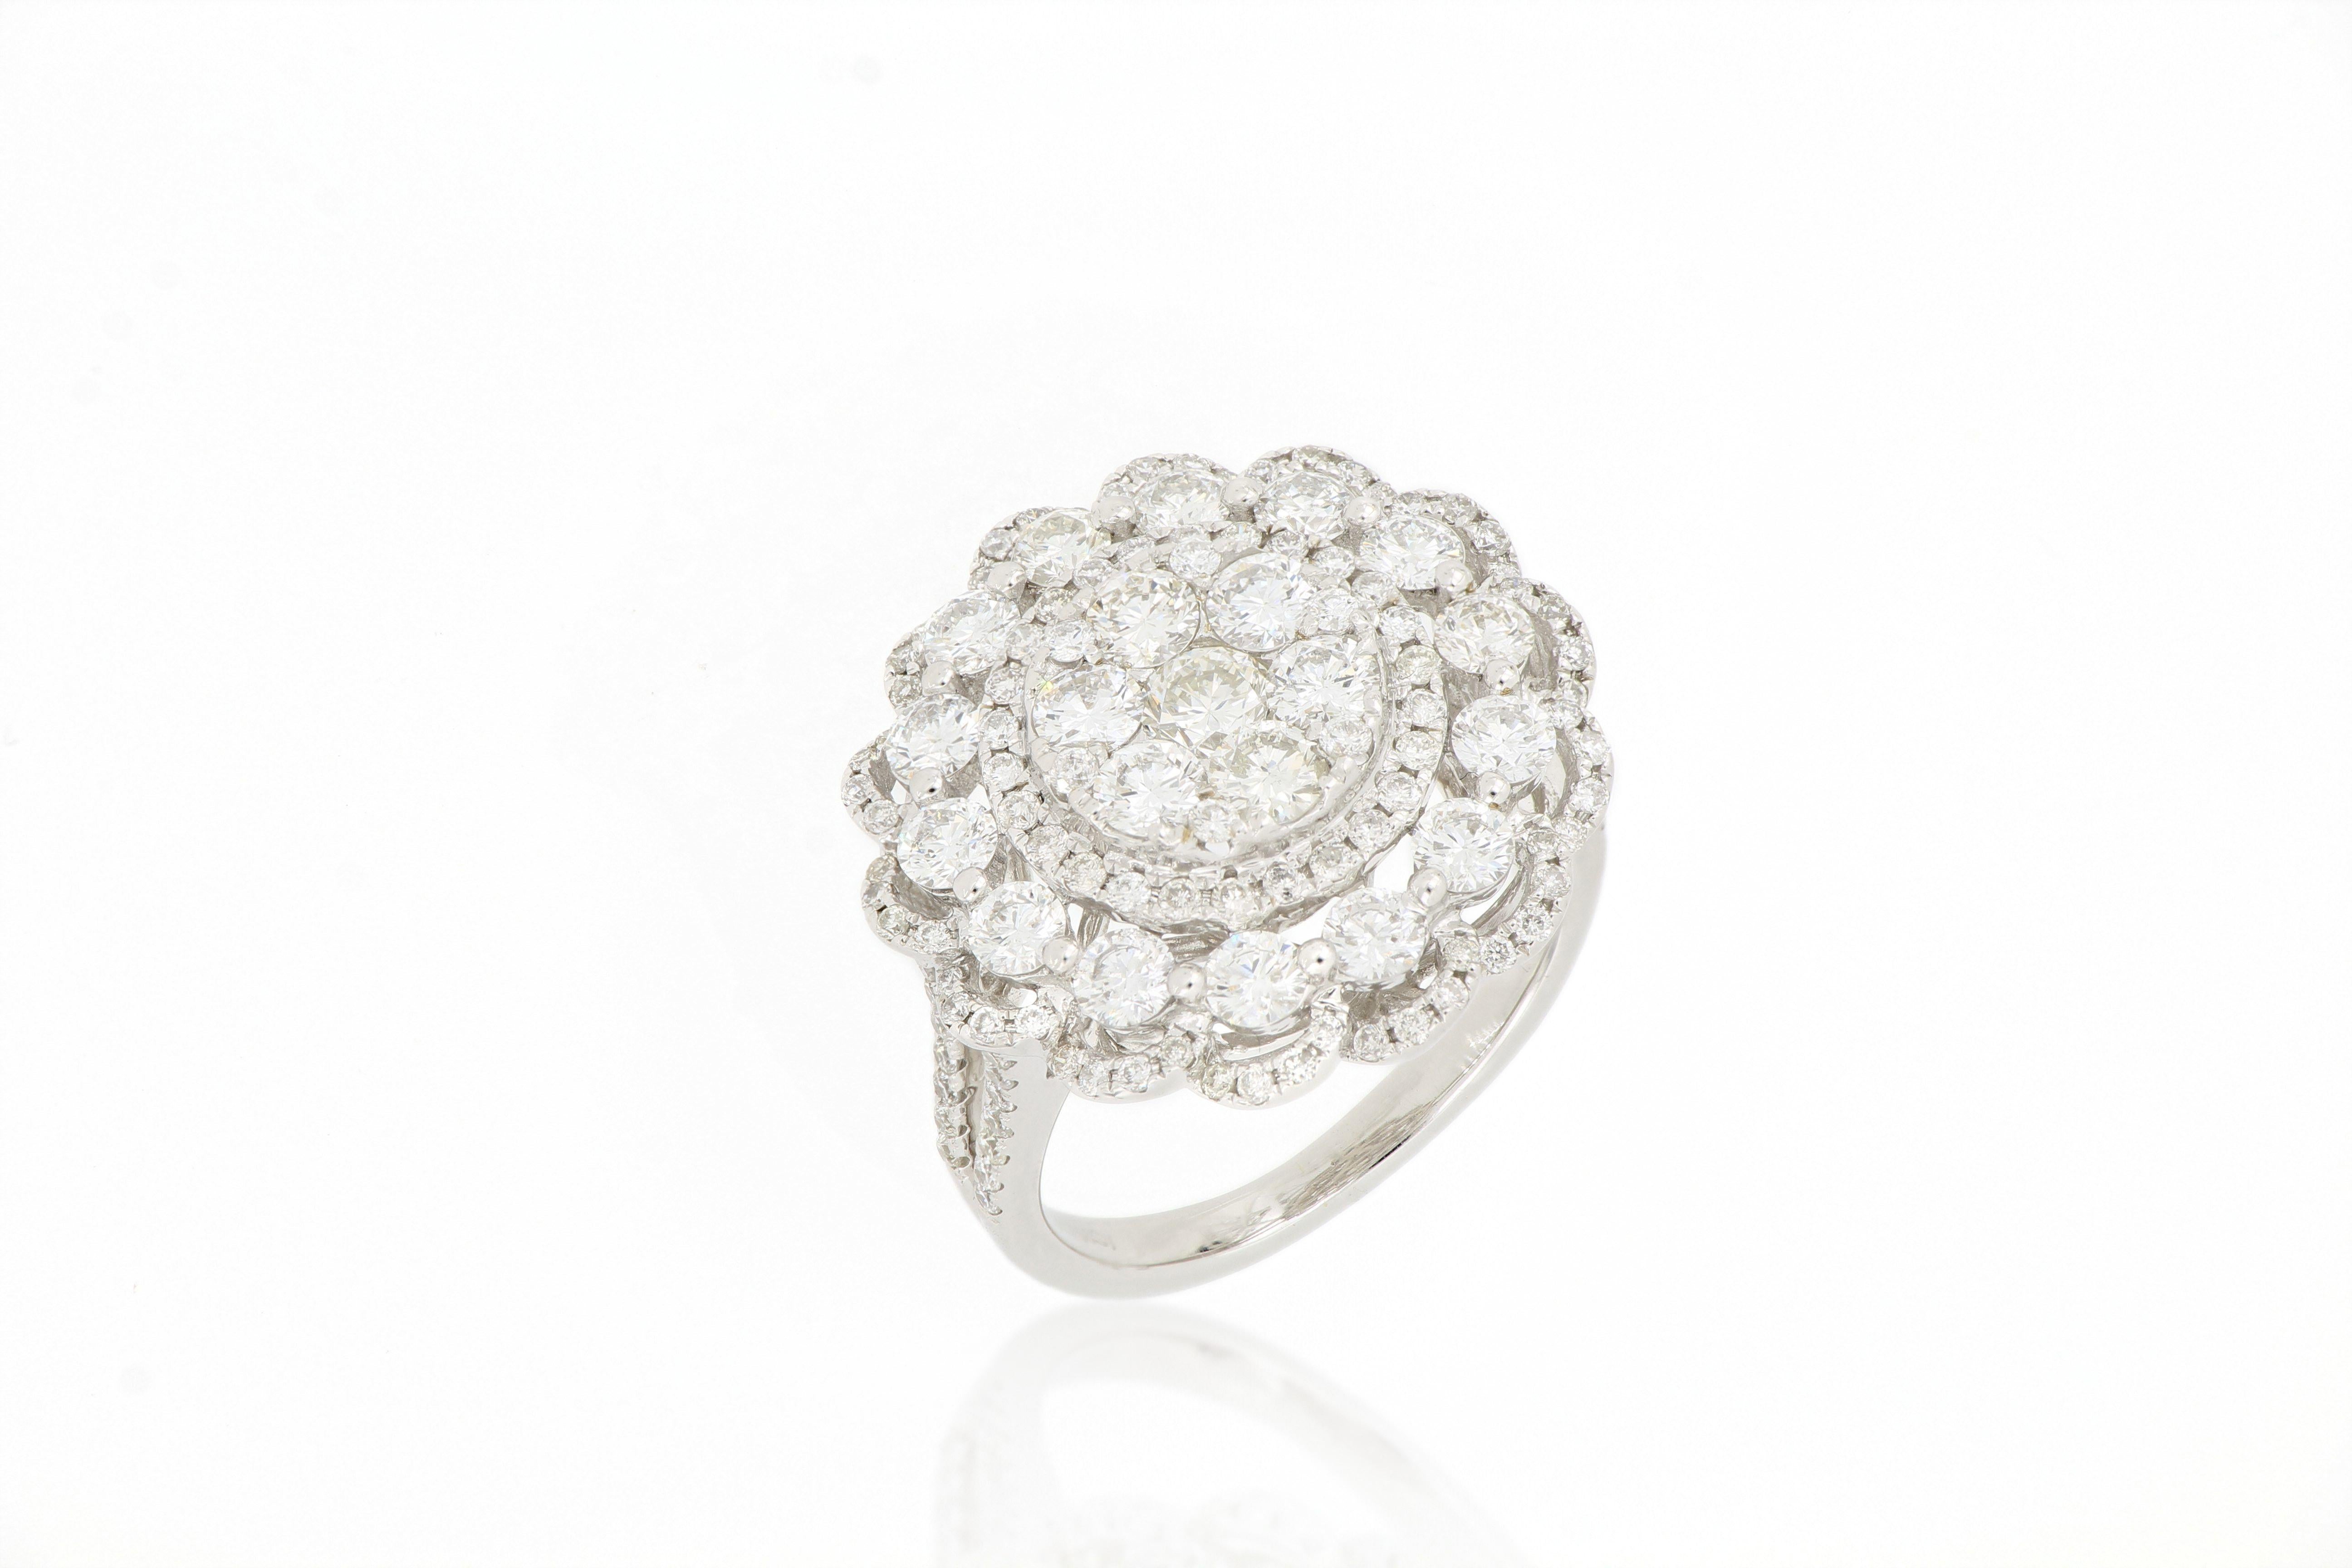 Une bague en diamant avec un motif floral, sertie de diamants taillés en brillant, pesant 1,5 million d'euros  2.94 carats, monté en or blanc 18 carats.
Une belle bague luxueuse qui peut être assortie à des robes de soirée de différents